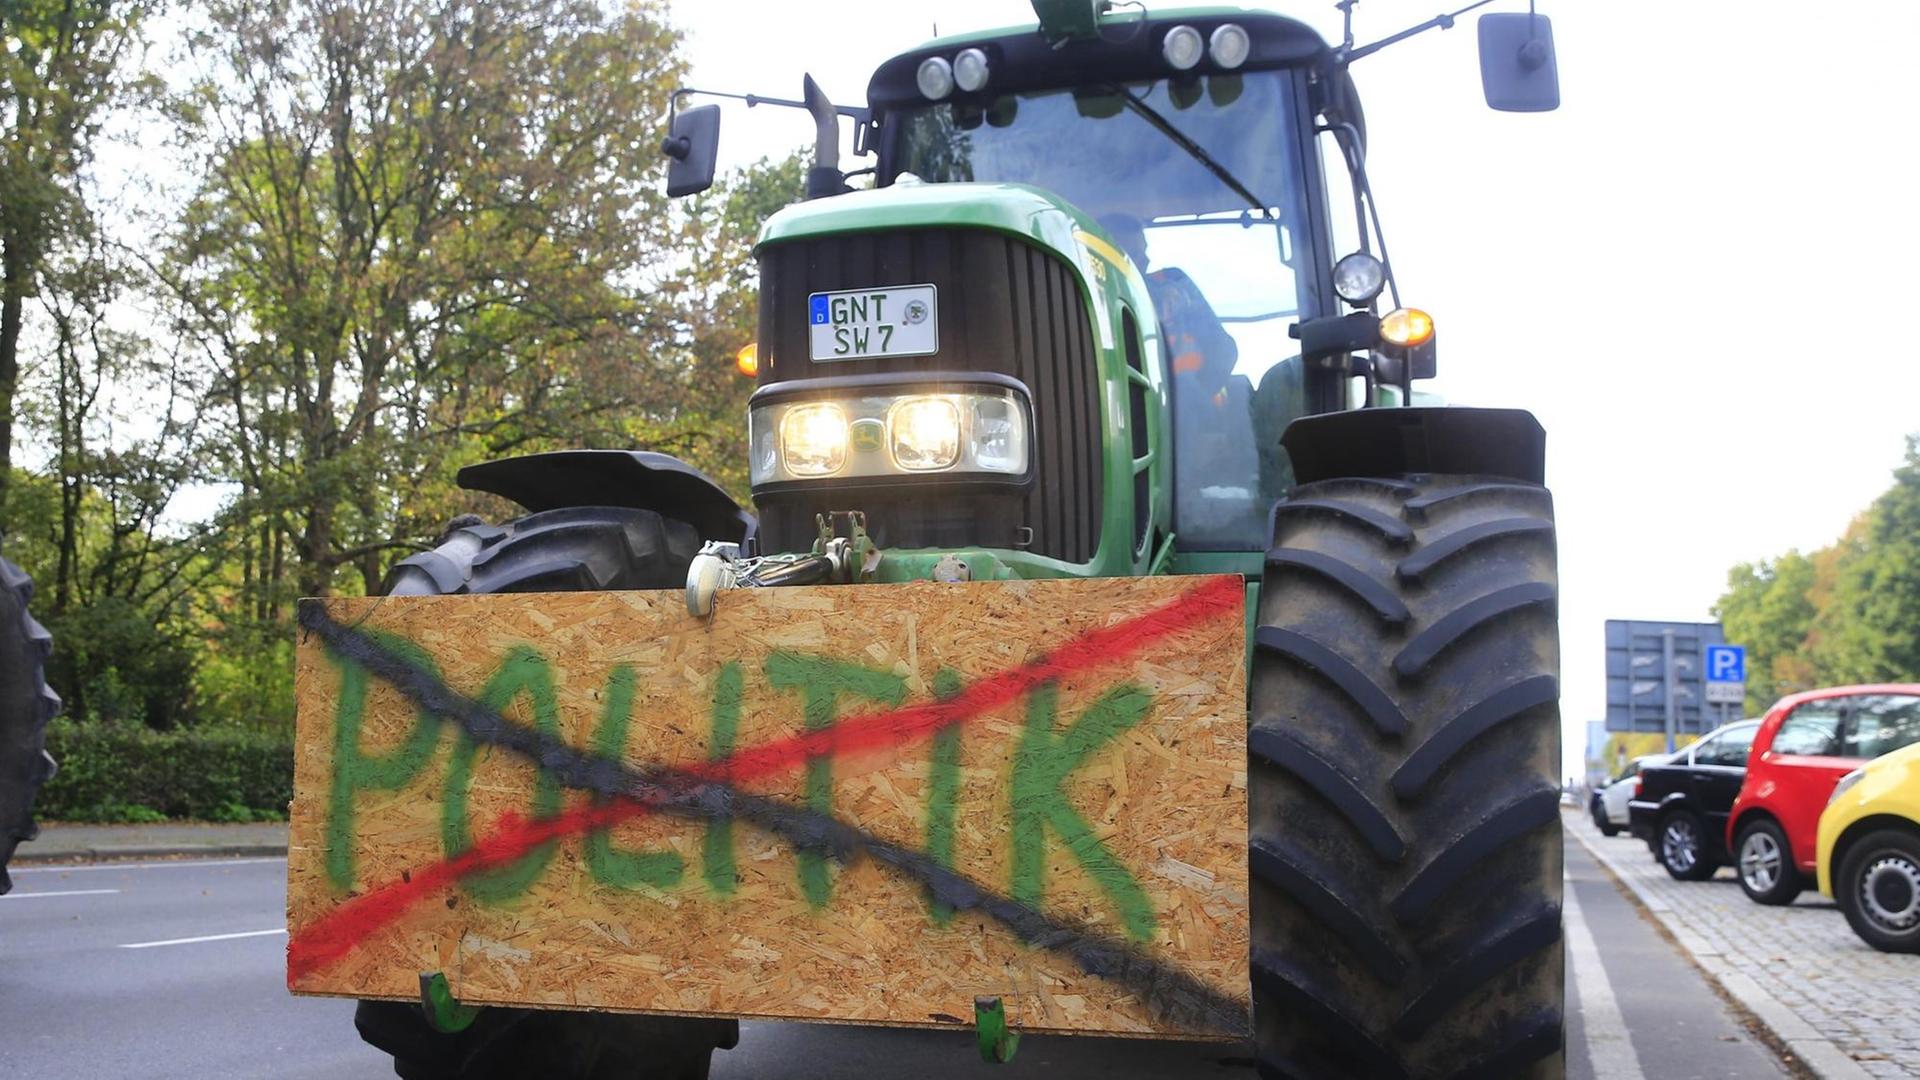 Bauernproteste in Berlin am 22. Oktober 2019. Ein Traktor ist mit einem Schild versehen. Darauf steht das Wort Politik, das durchgestrichen ist.